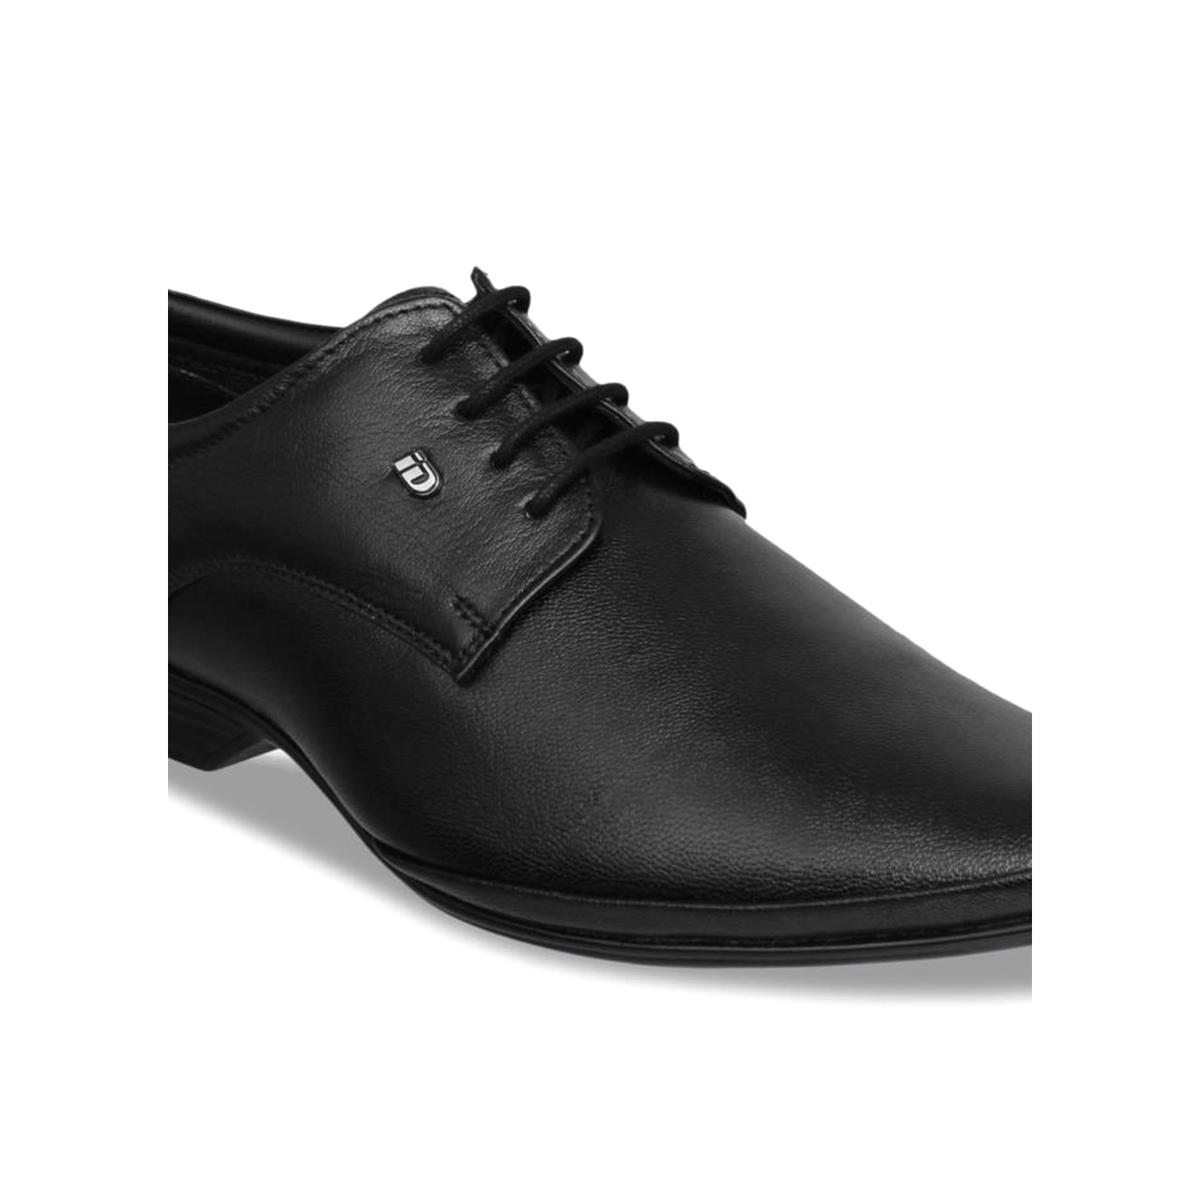 Buy ID Black Formal Derby Online | SKU:52-2063-11-41 - Metro Shoes